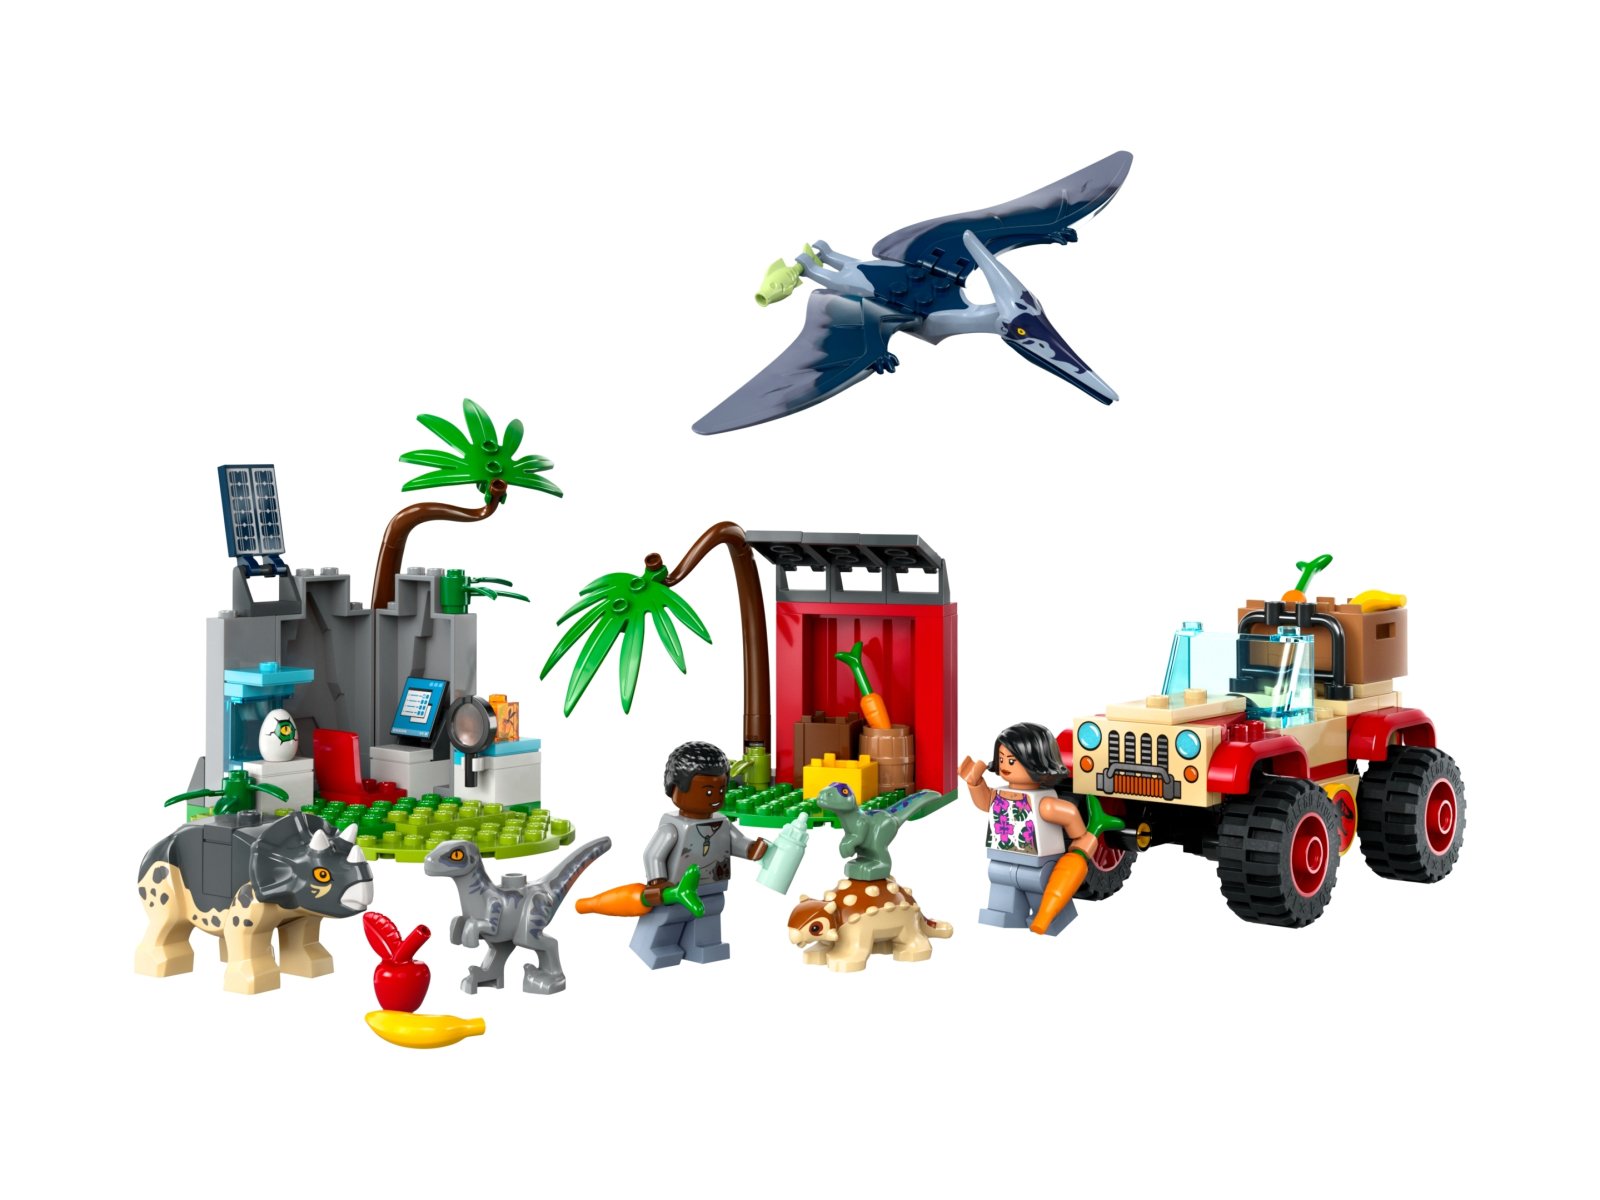 LEGO 76963 Jurassic World Centrum ratunkowe dla małych dinozaurów